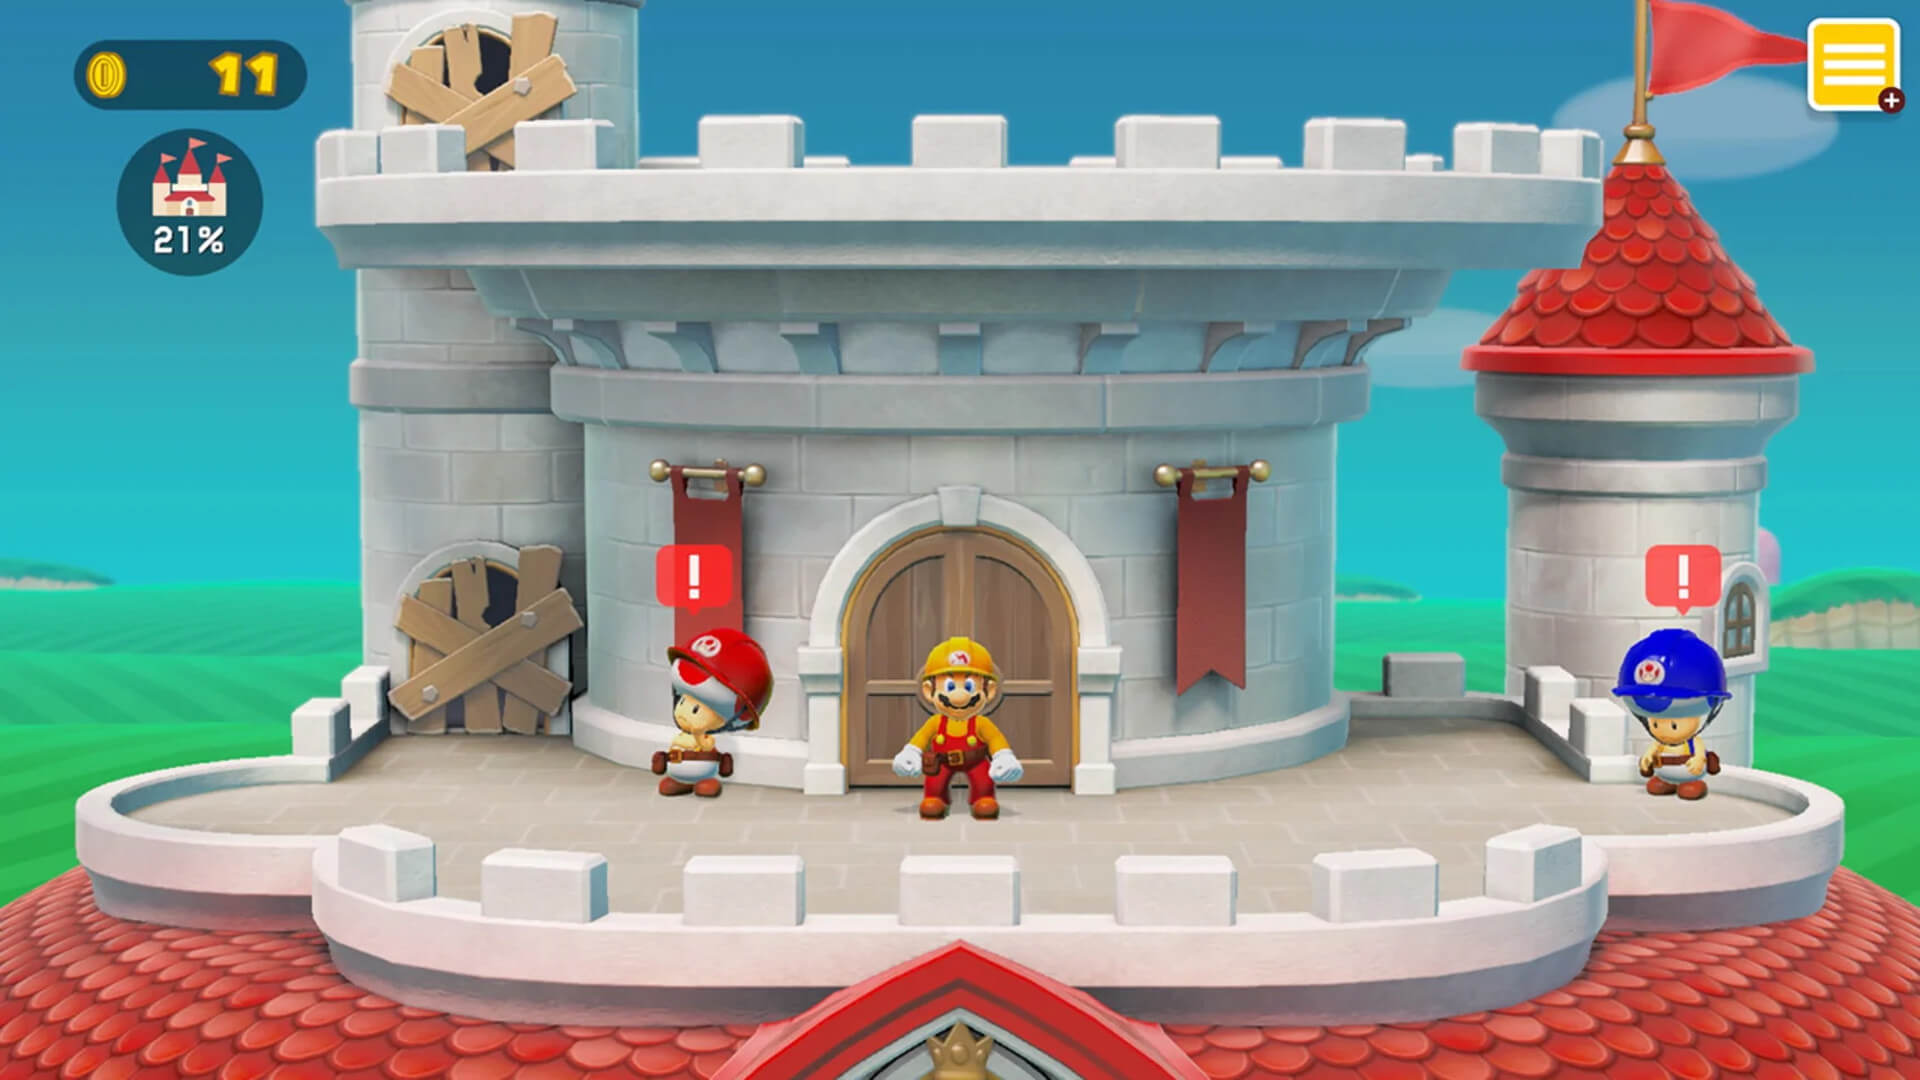 Mario, yeni Nintendo işçi şikayeti için görsel bir paralellik olarak tasarlanan Super Mario Maker 2'de bir inşaatçı üniforması giyiyor